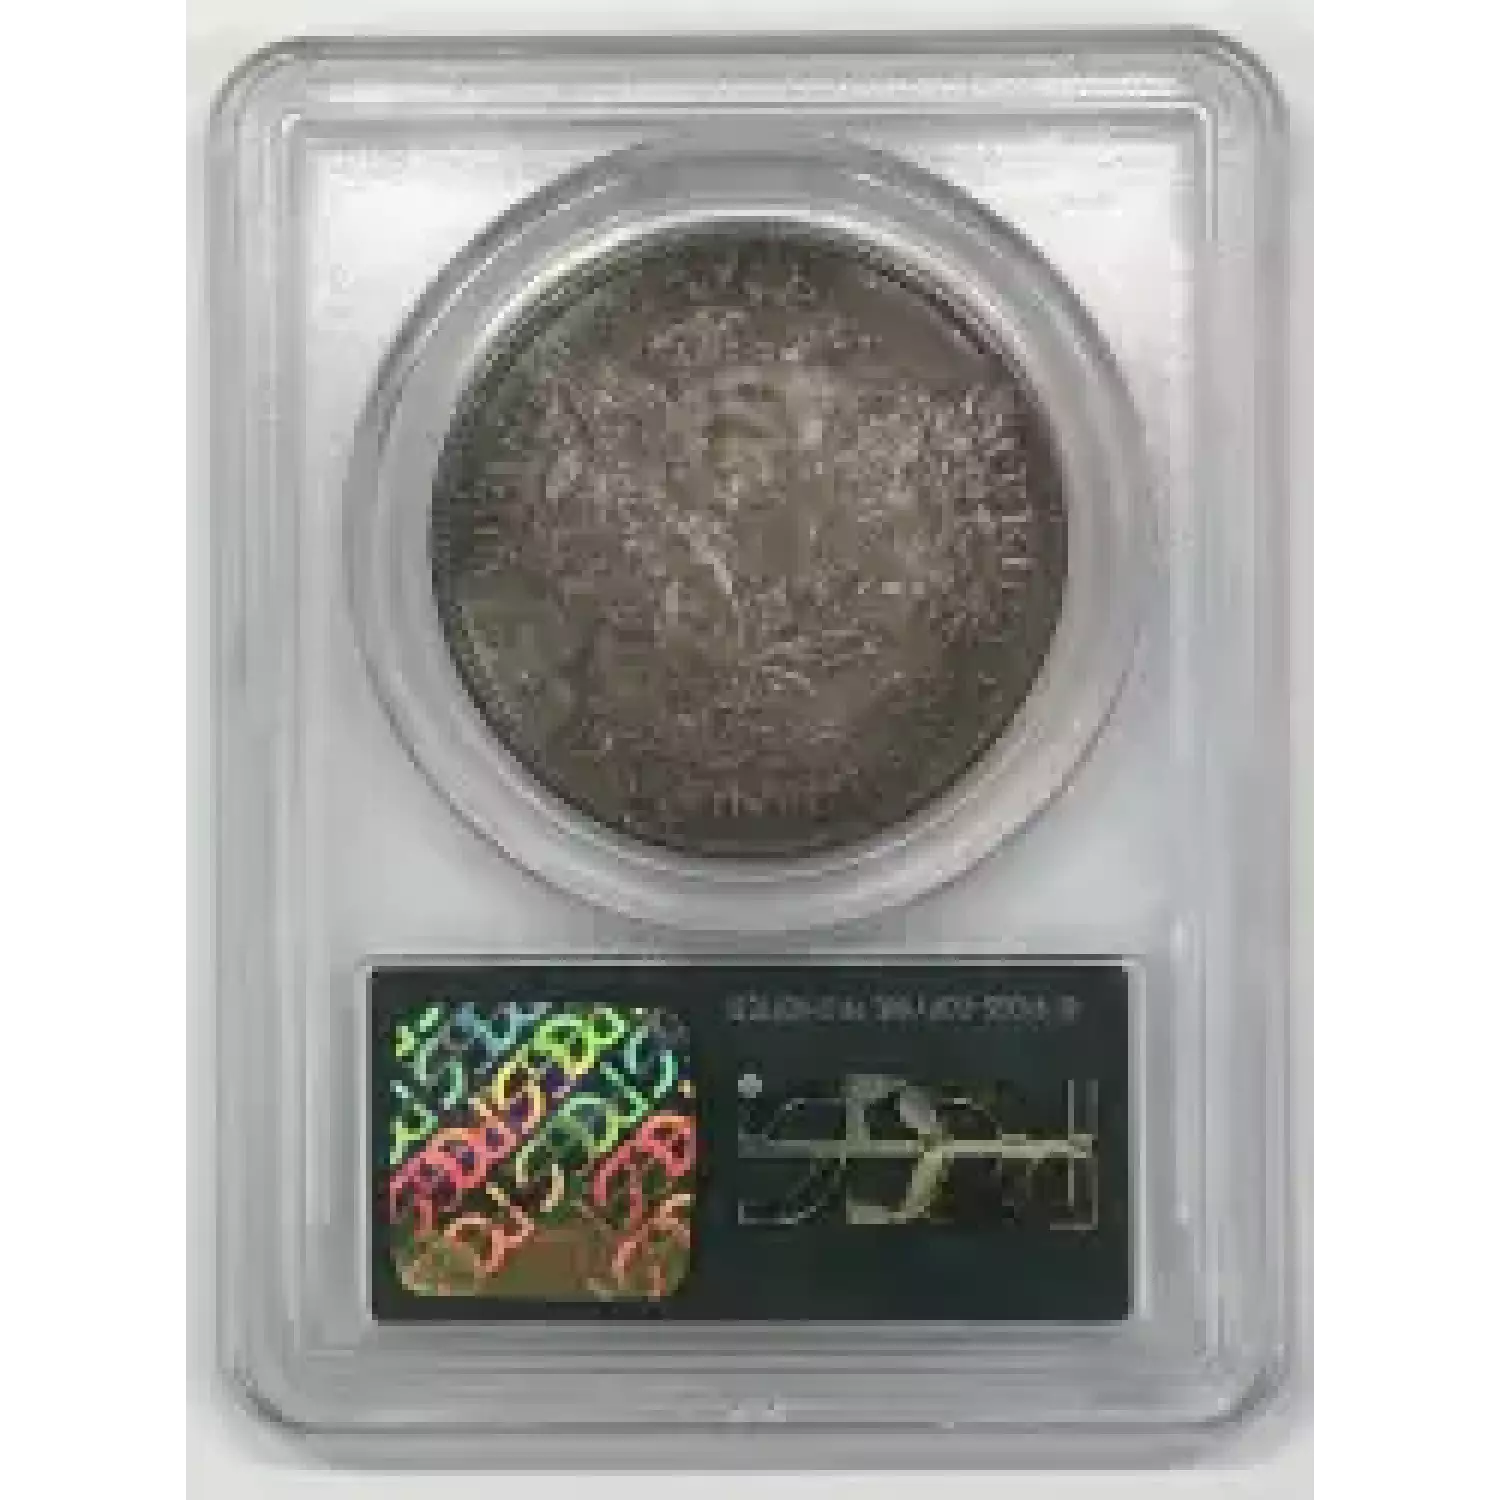 1900-O $1 (2)